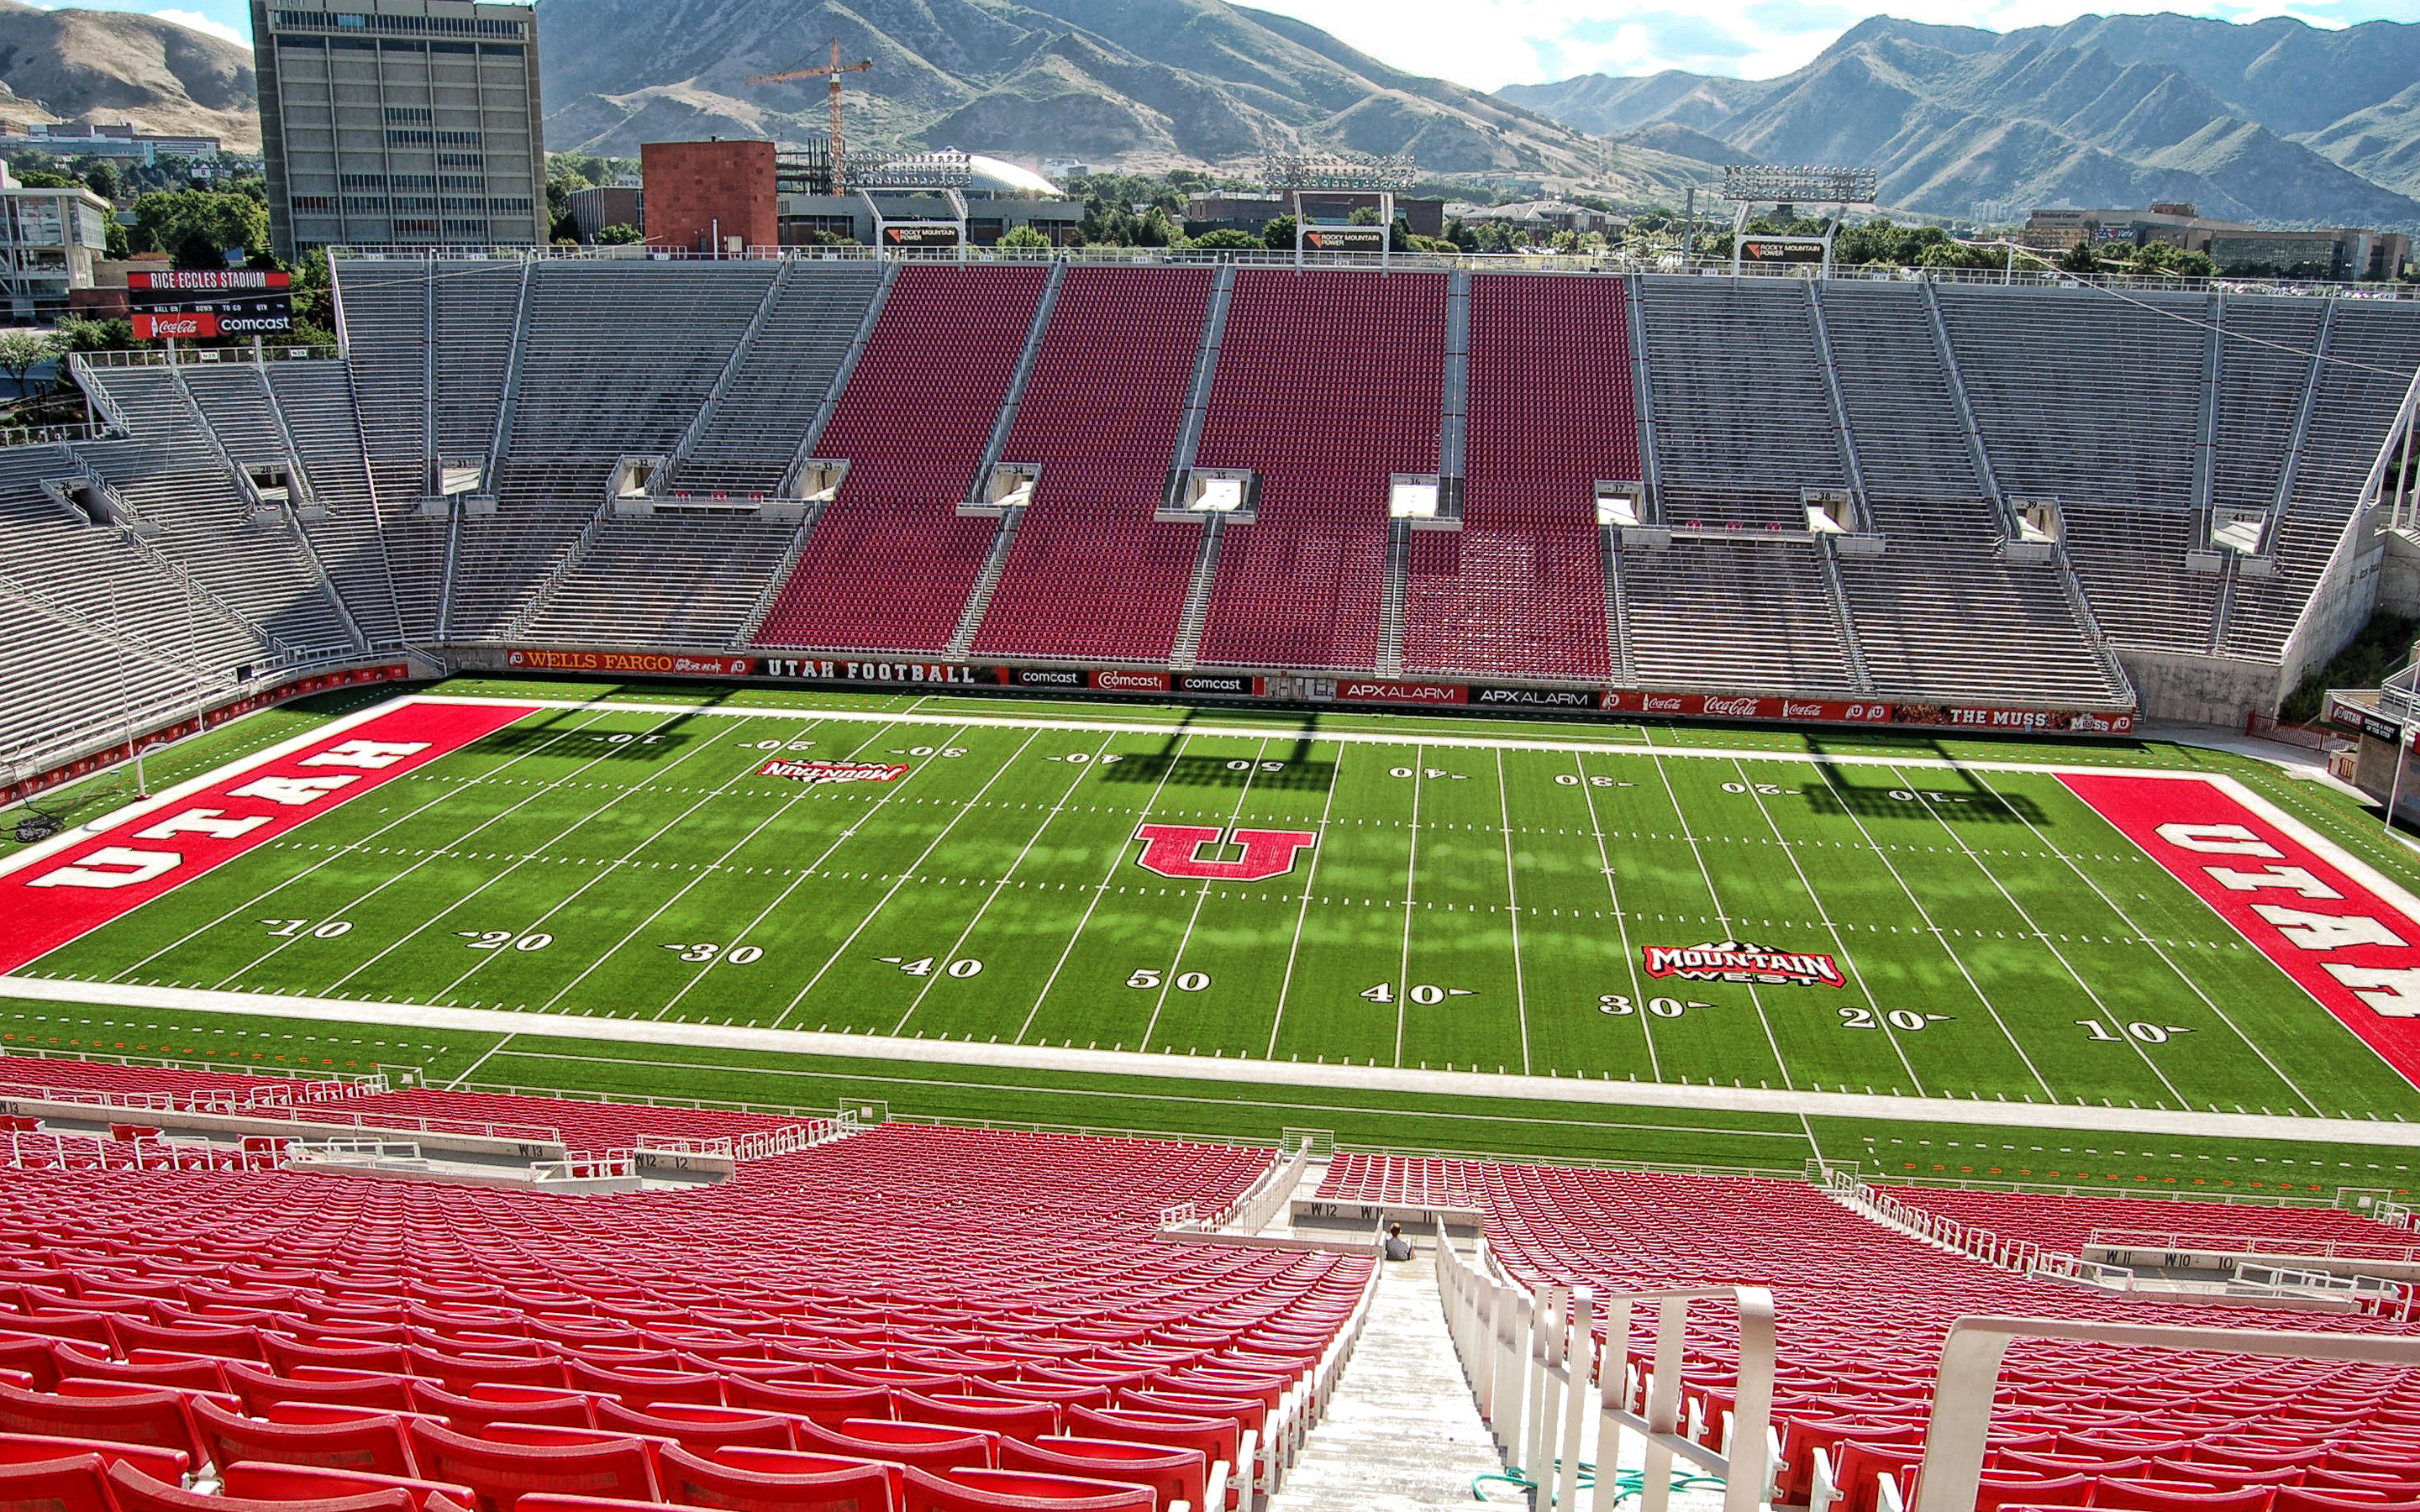 Rice Eccles Stadium, Utah Utes, American football, University of Utah, 2880x1800 HD Desktop